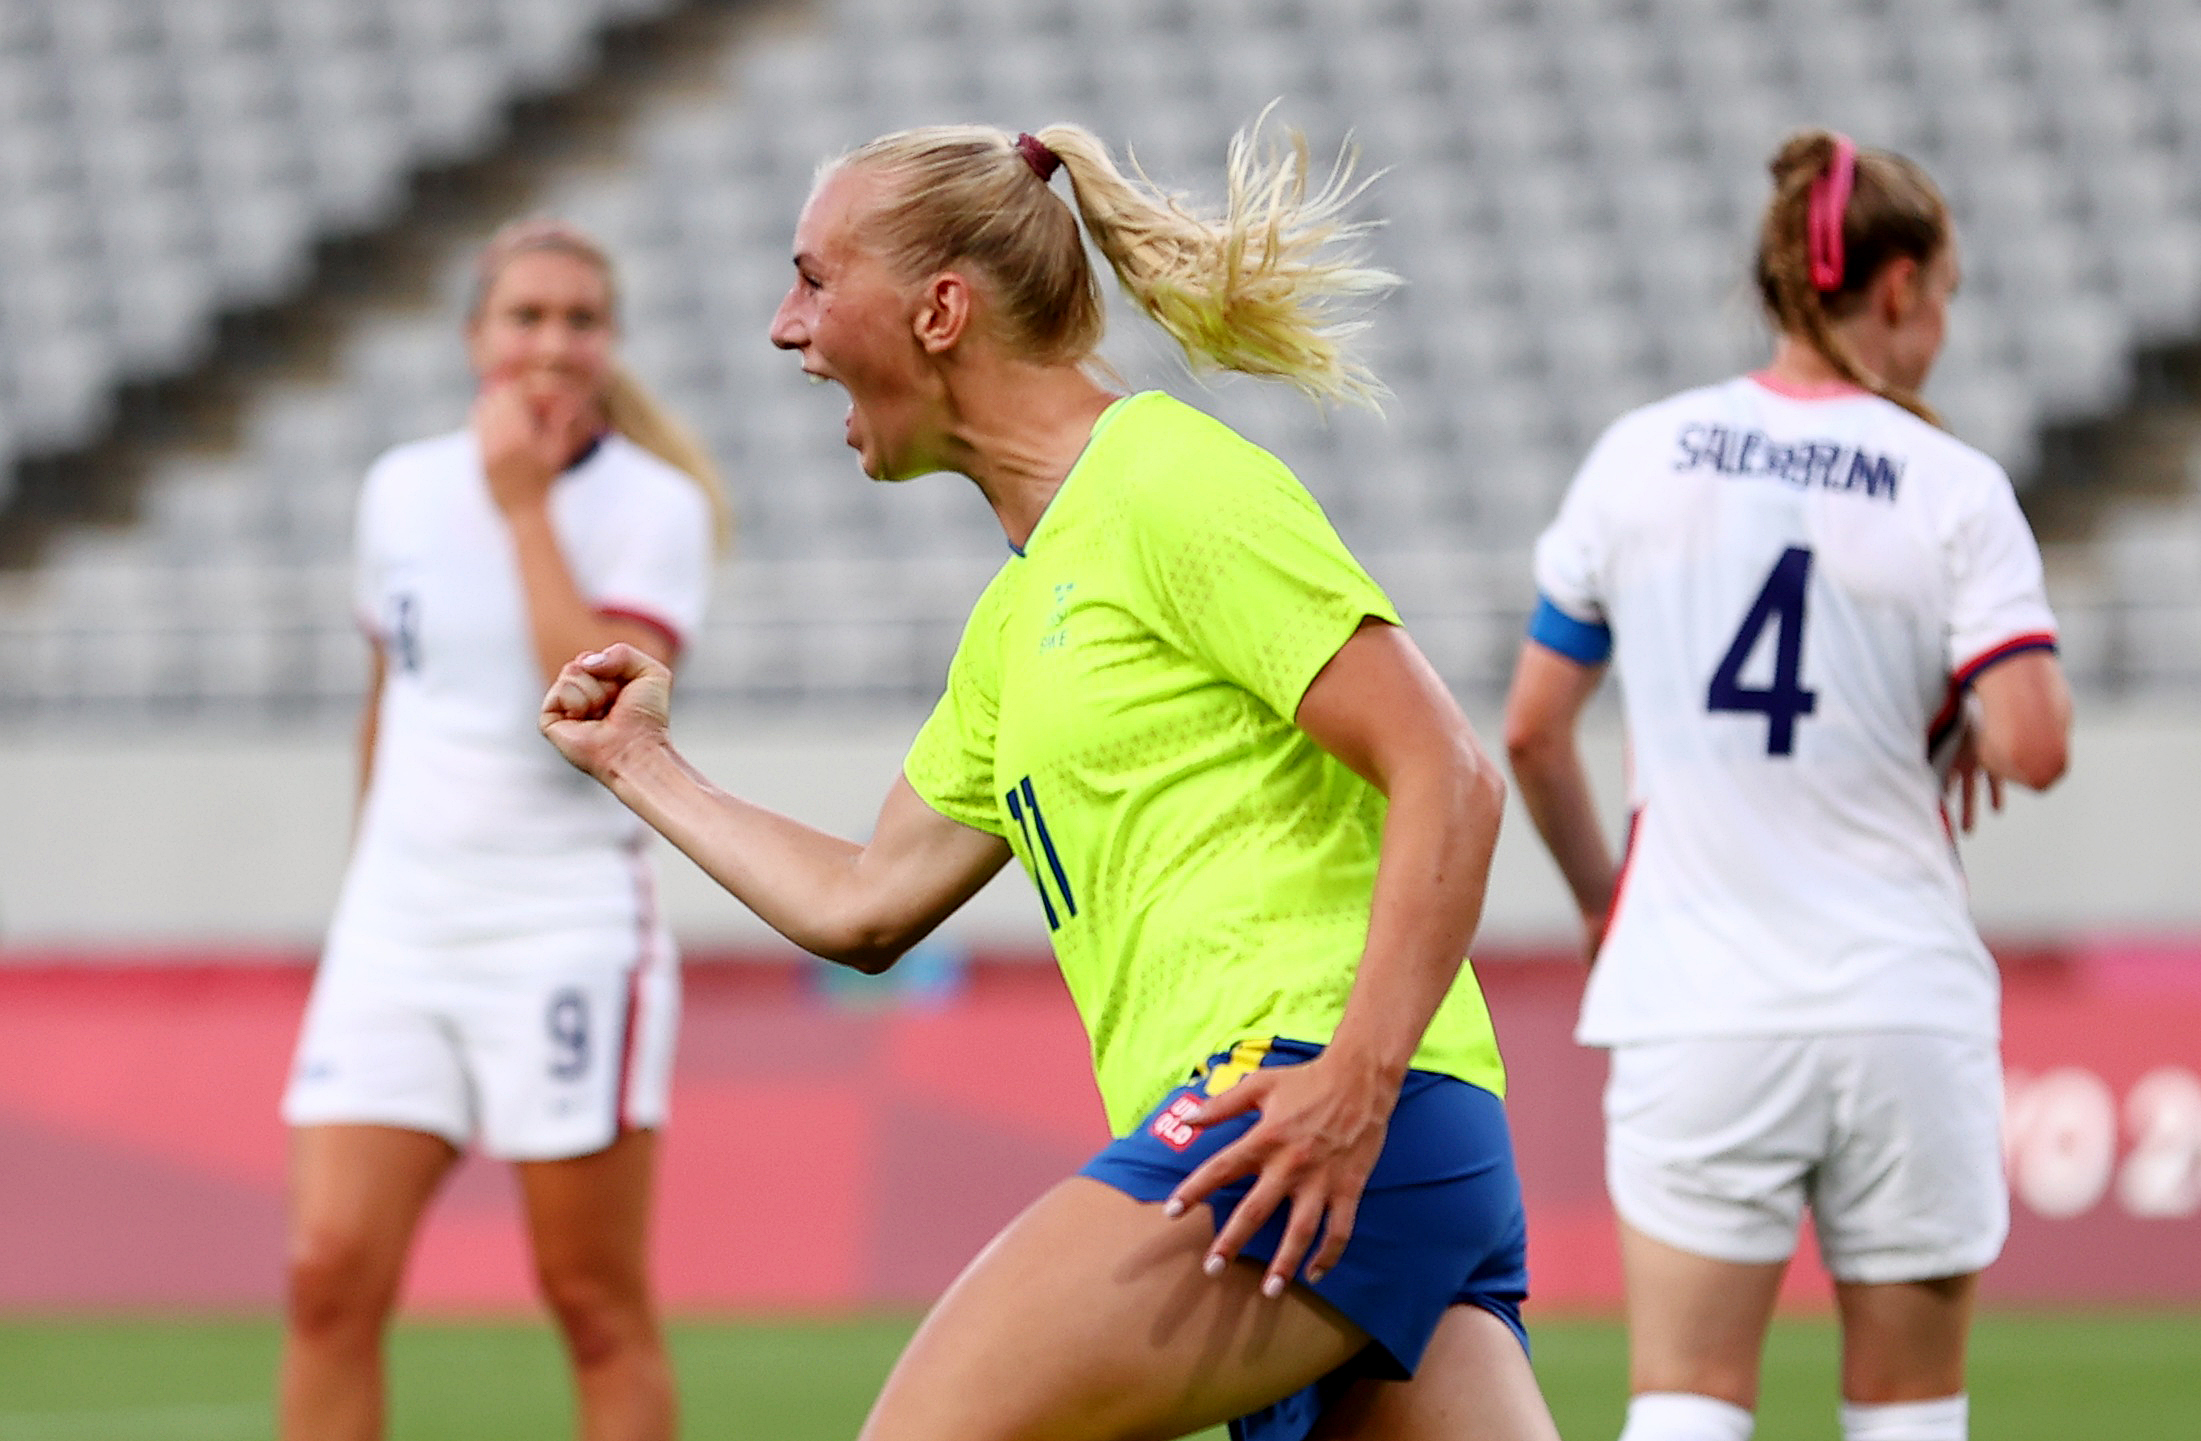 Soccer Sweden S Women Stun U S With 3 0 Thrashing In Tokyo Opener Reuters